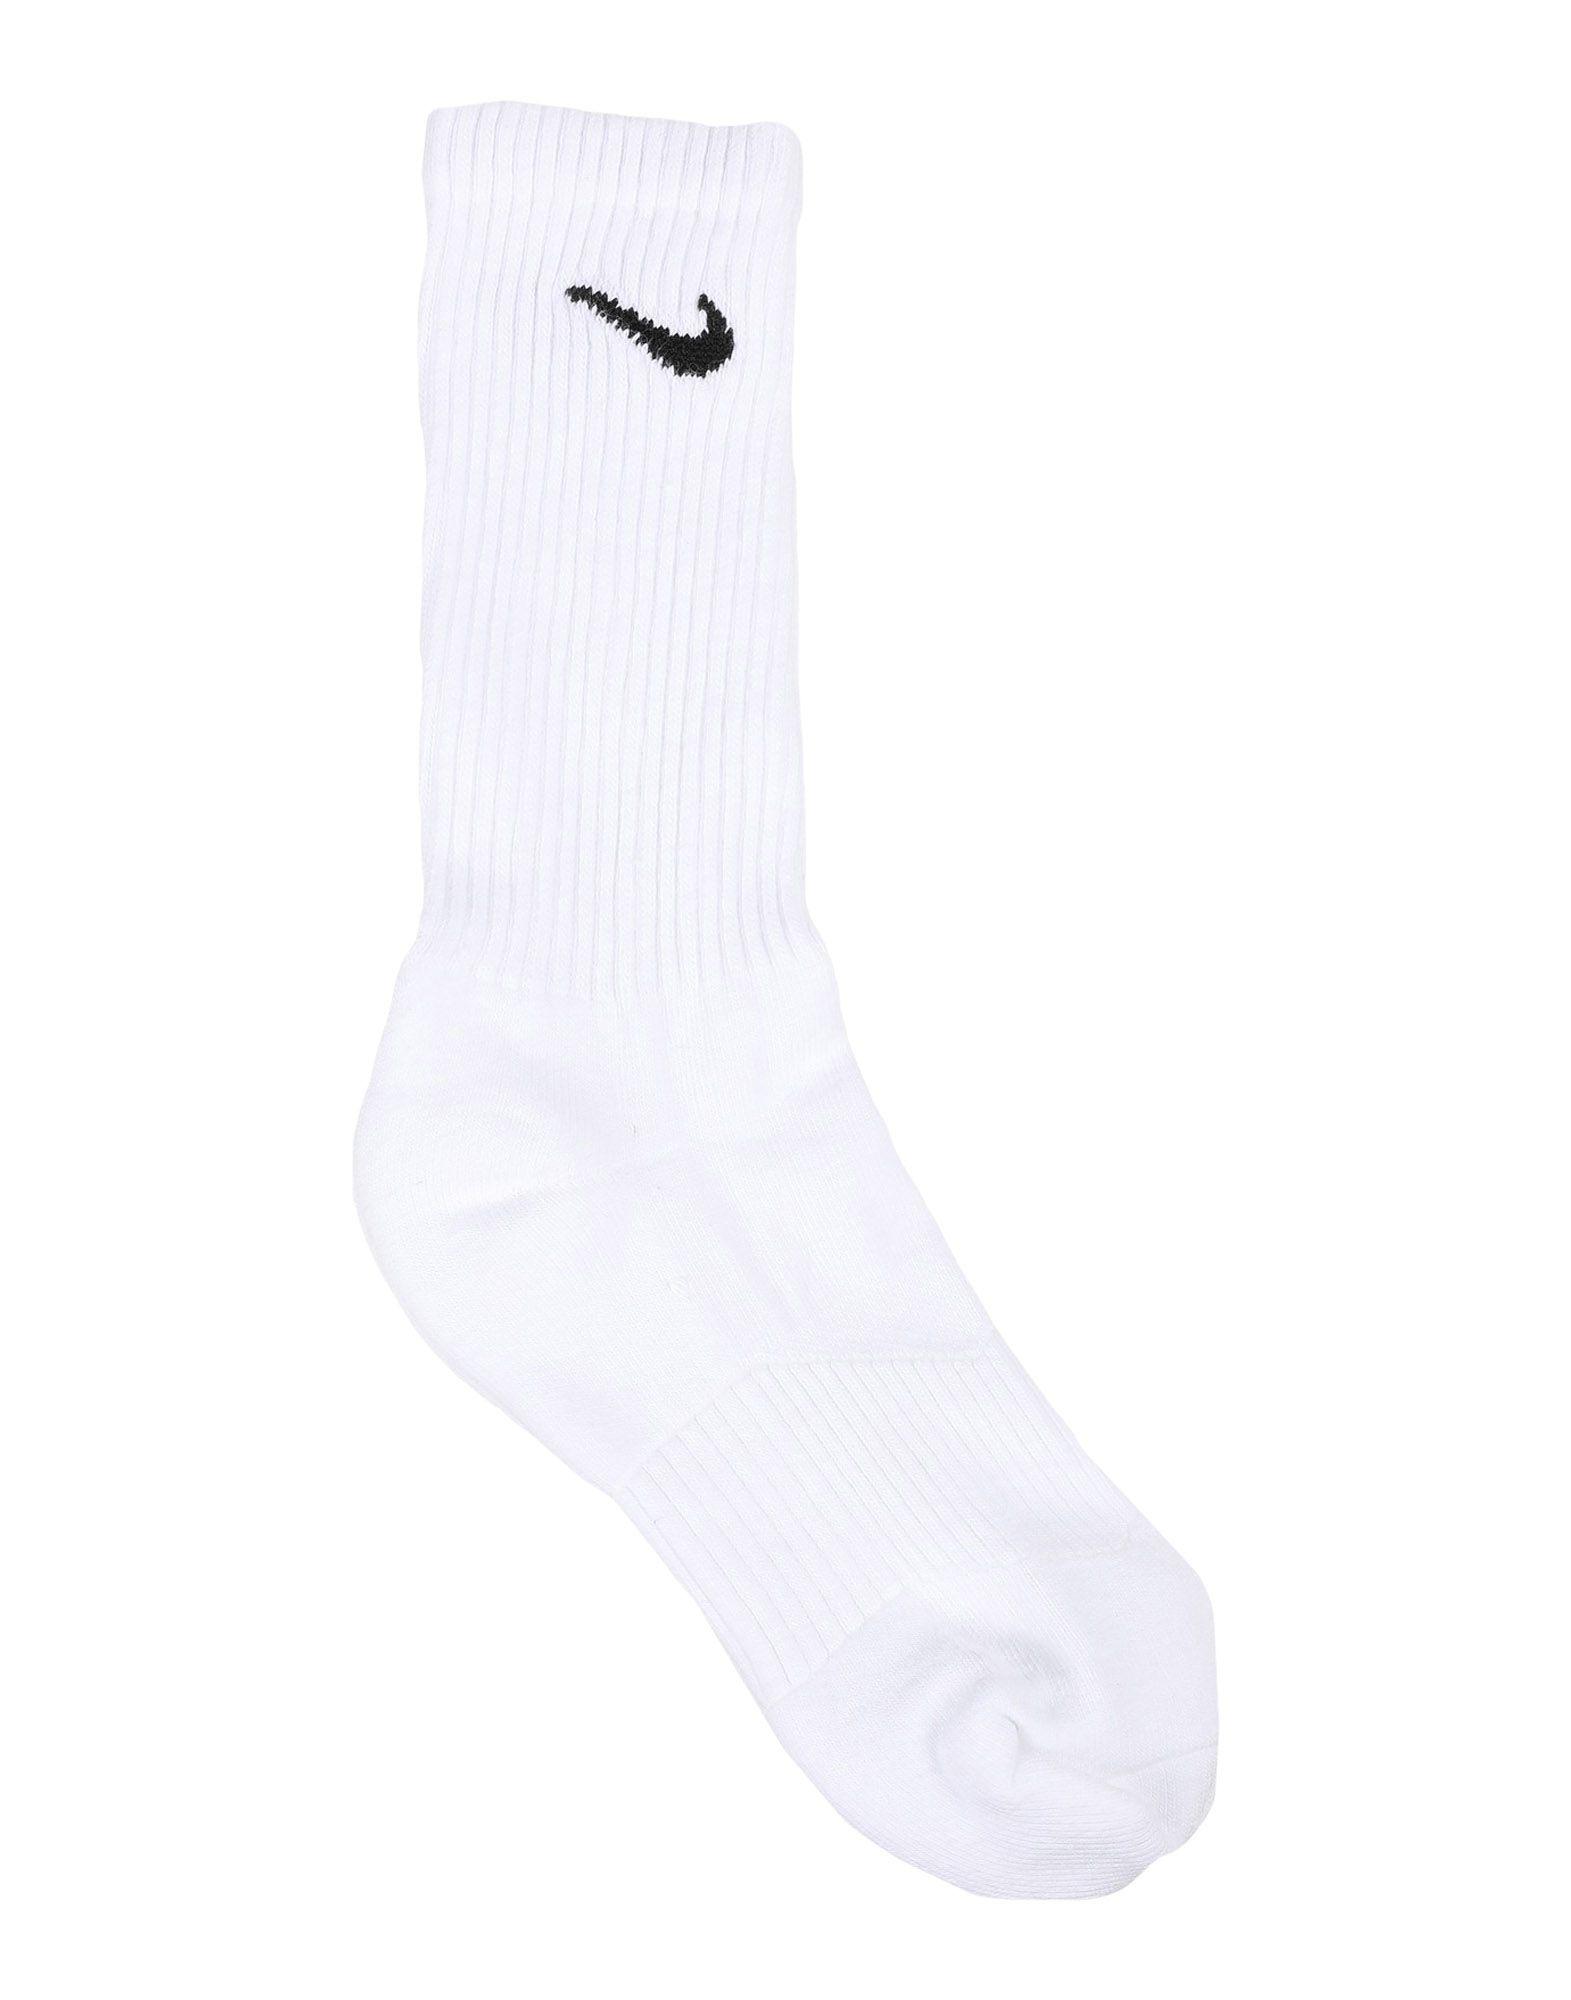 short nike socks white